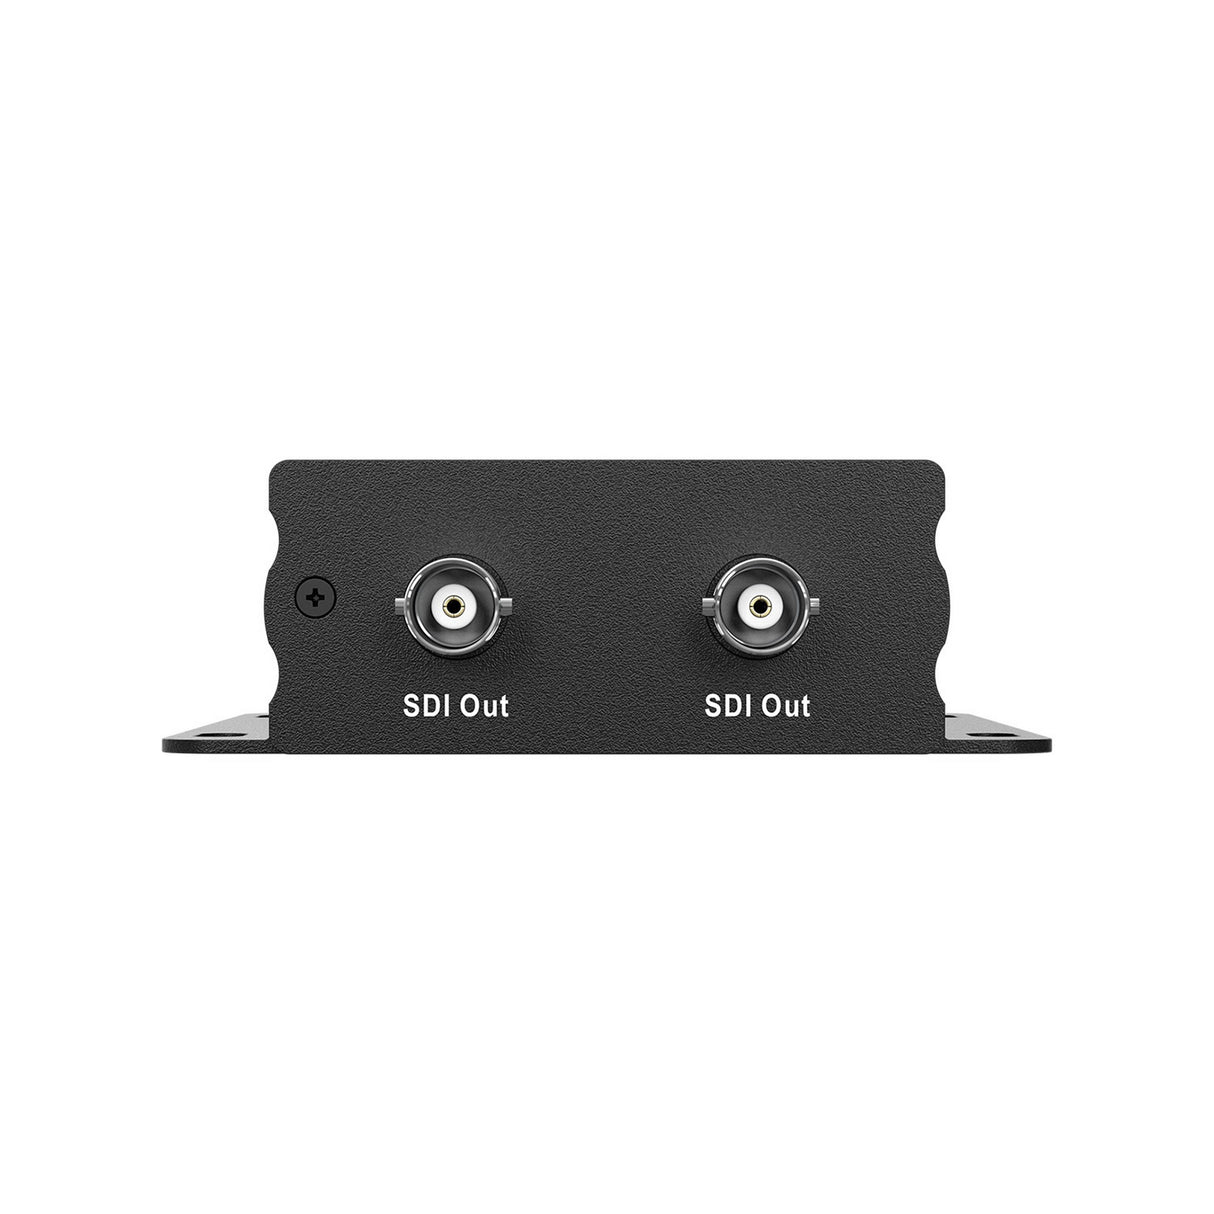 BZBGEAR BG-3GS12 1080P FHD 3G-SDI 1x2 Splitter/Distribution Amplifier